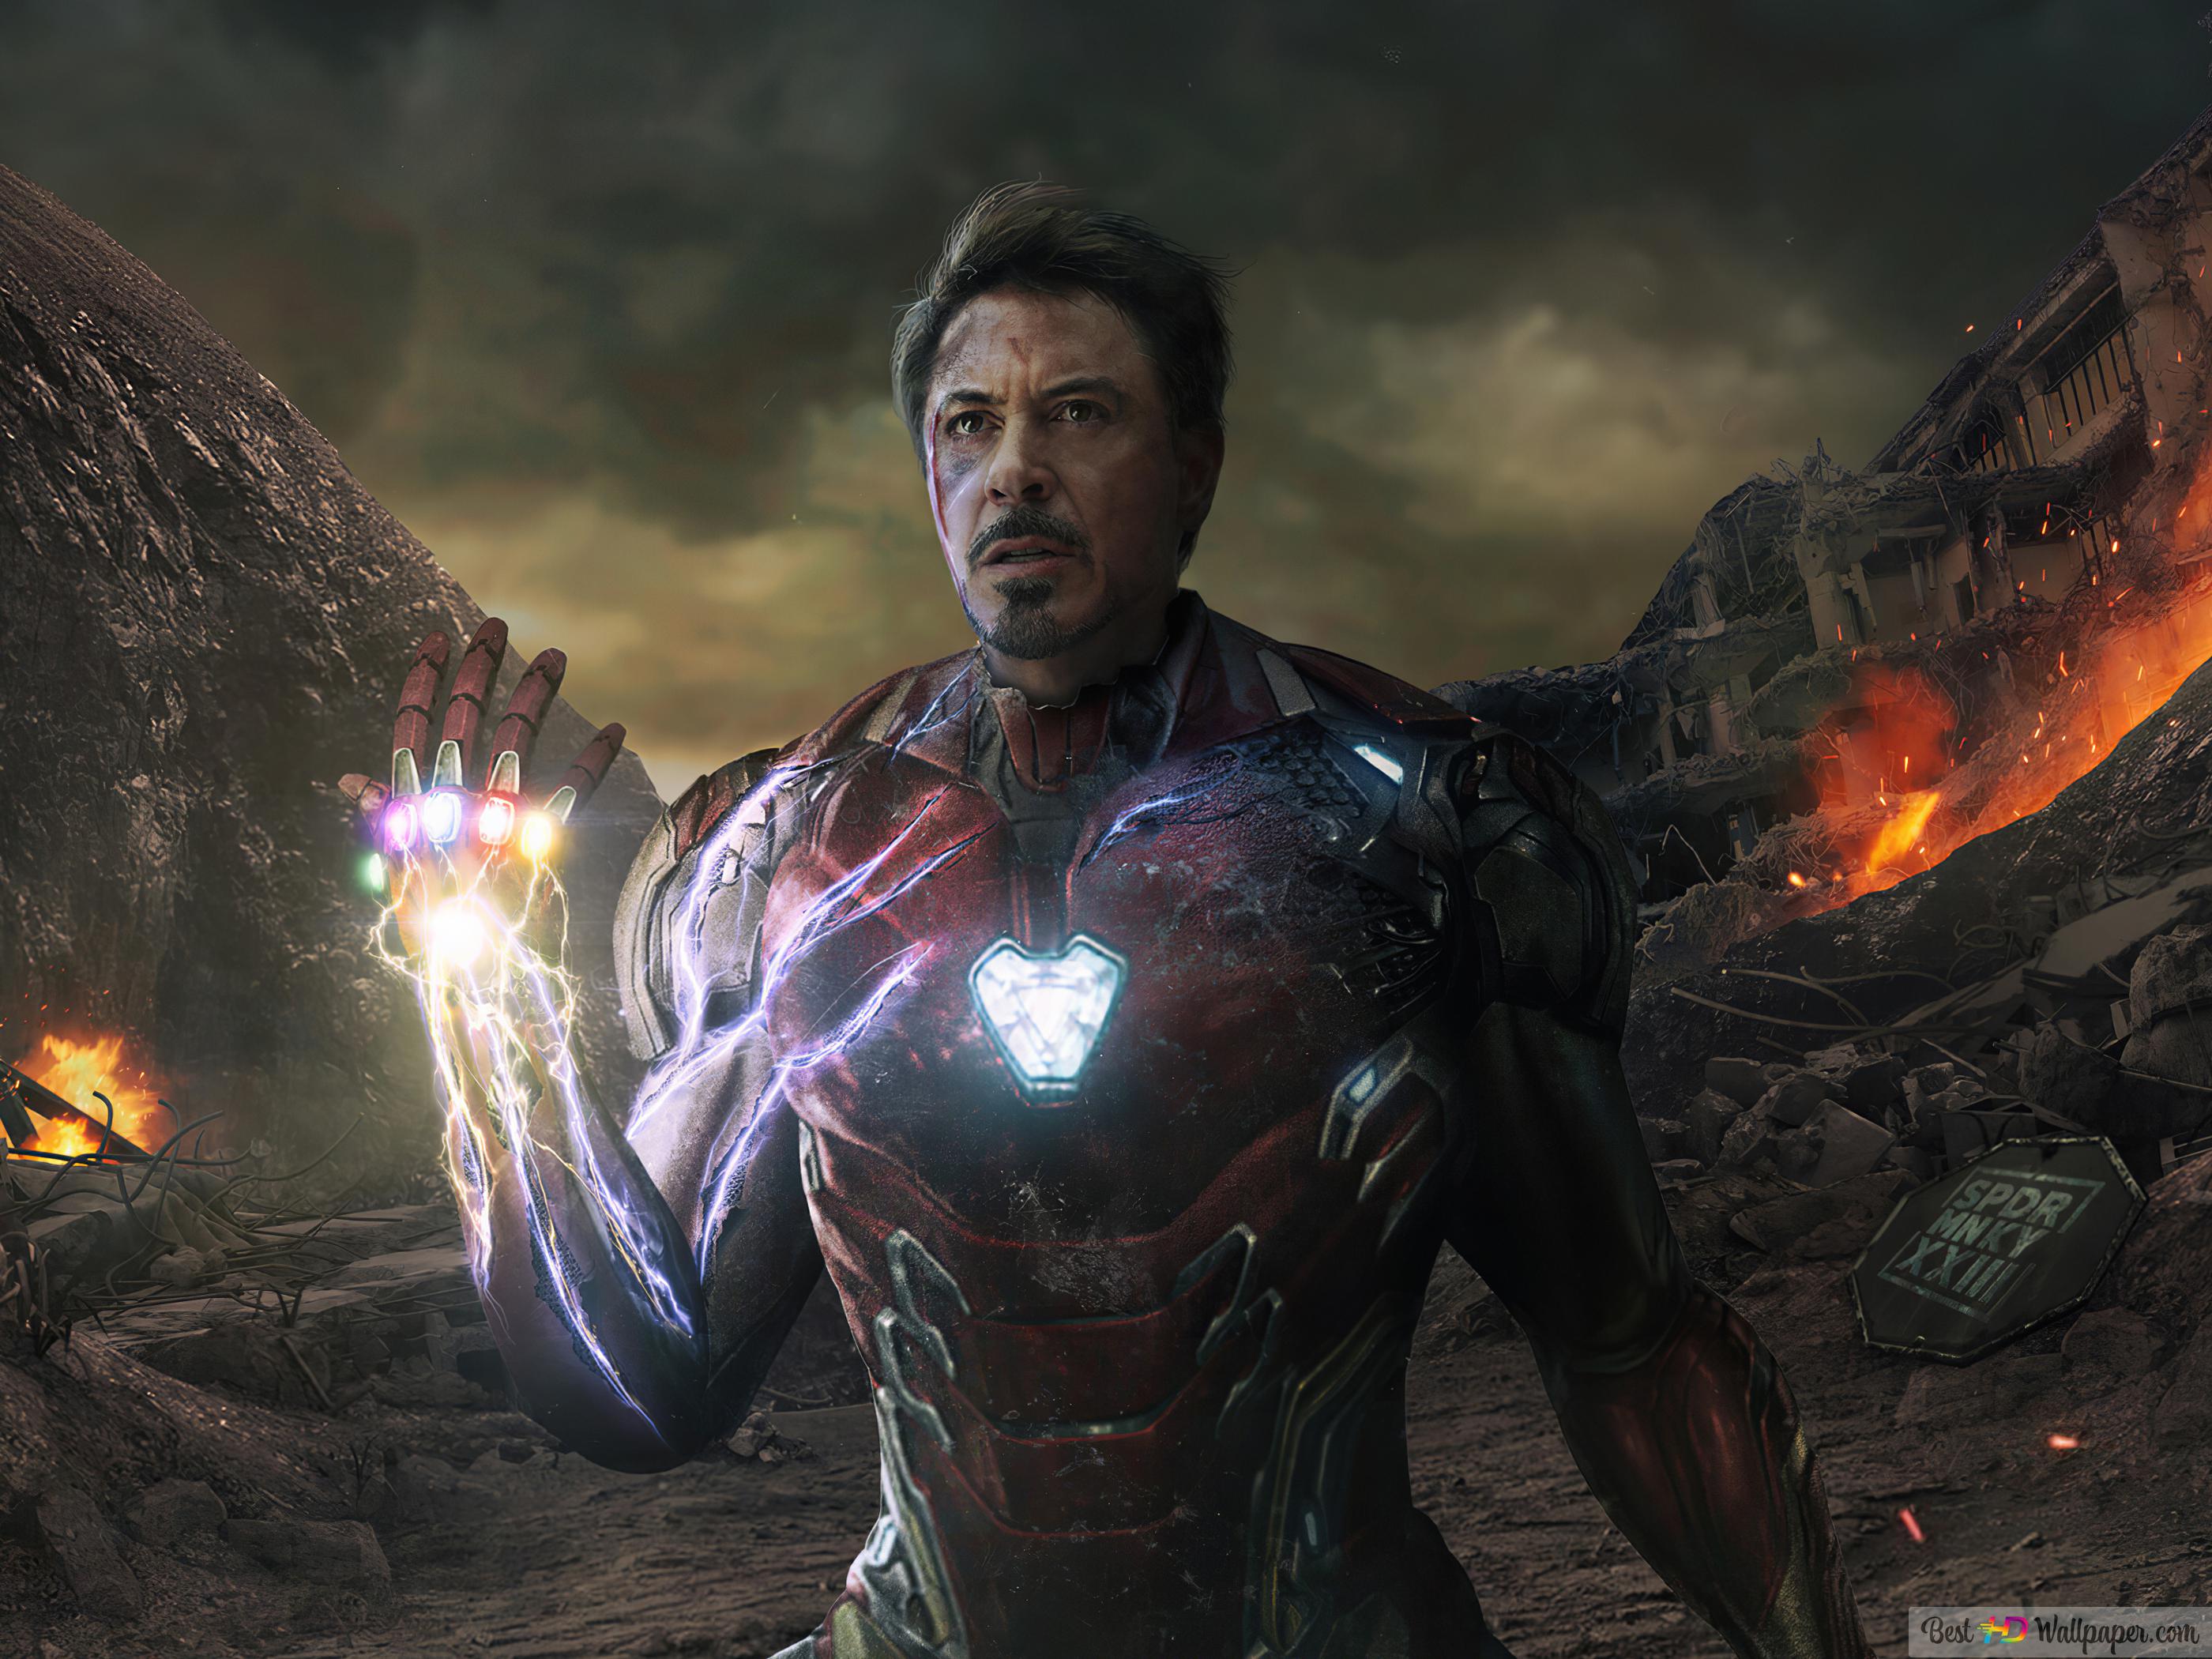 Iron Man Vs Thanos Wallpapers